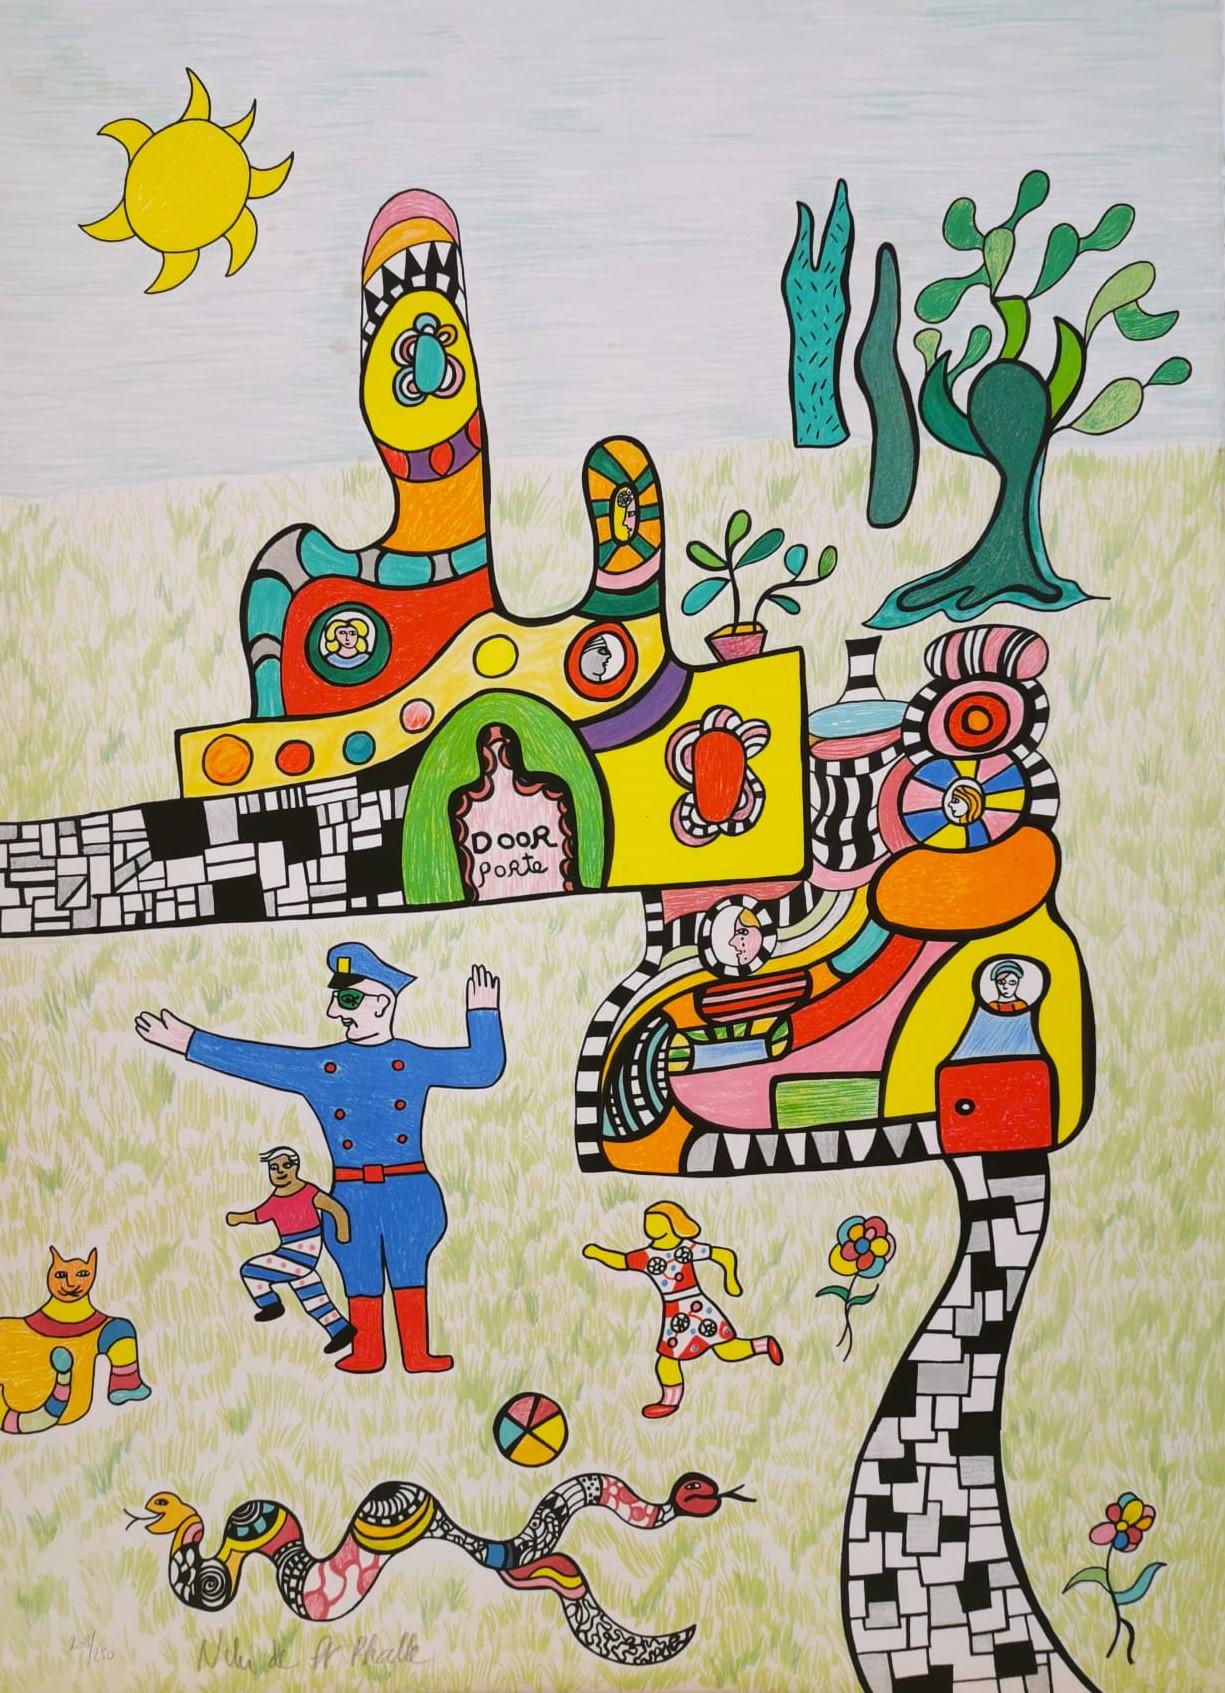 Where is Niki de Saint Phalle’s art?